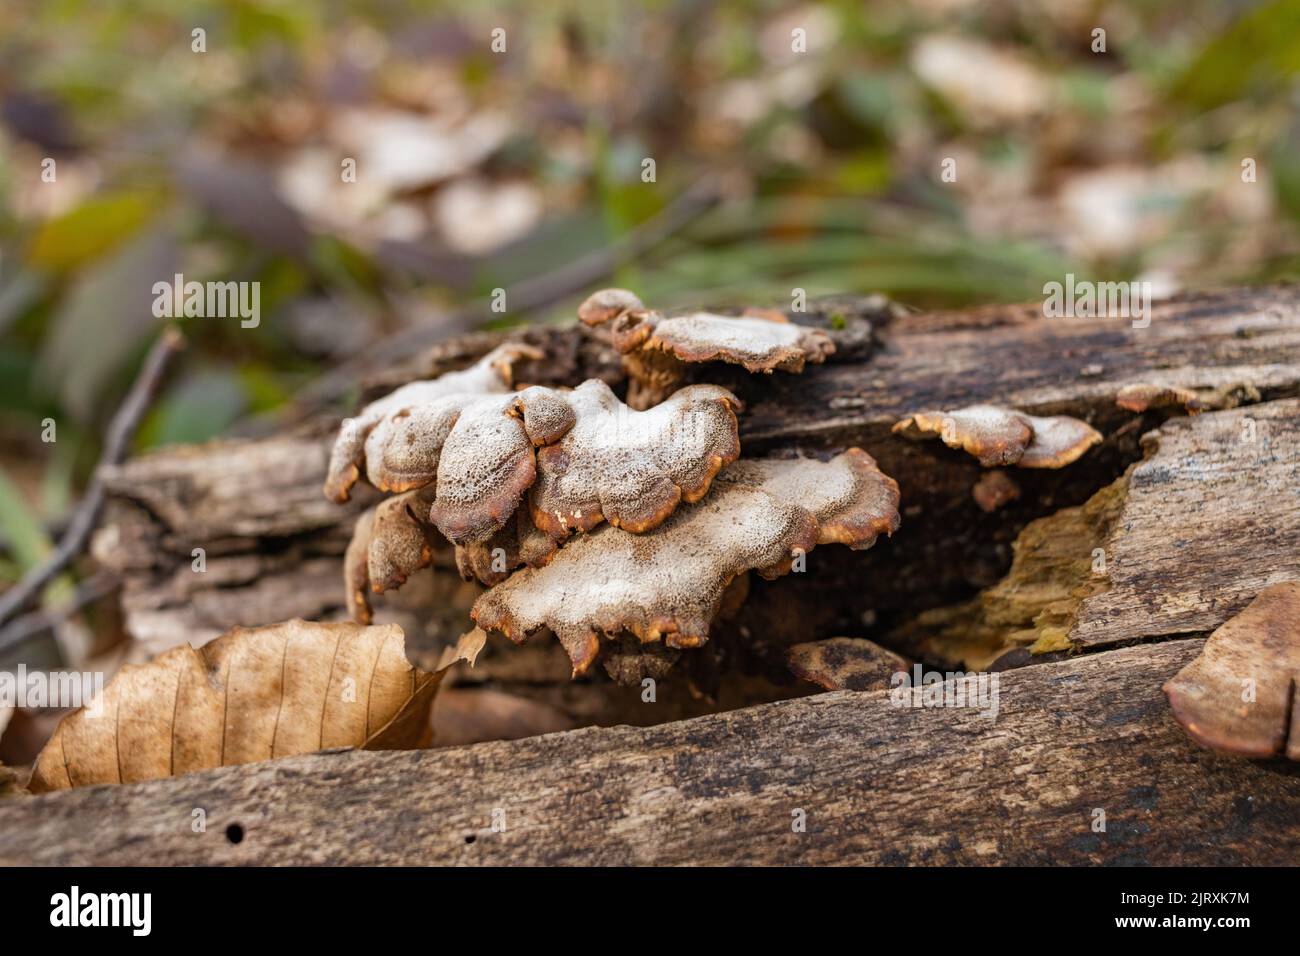 Funghi parassiti di grandi dimensioni che crescono su tronchi d'albero. Fungo di tinder, fungo dello zoccolo, conca di tinder, poliporo di tinder o fungo dell'uomo di ghiaccio Foto Stock